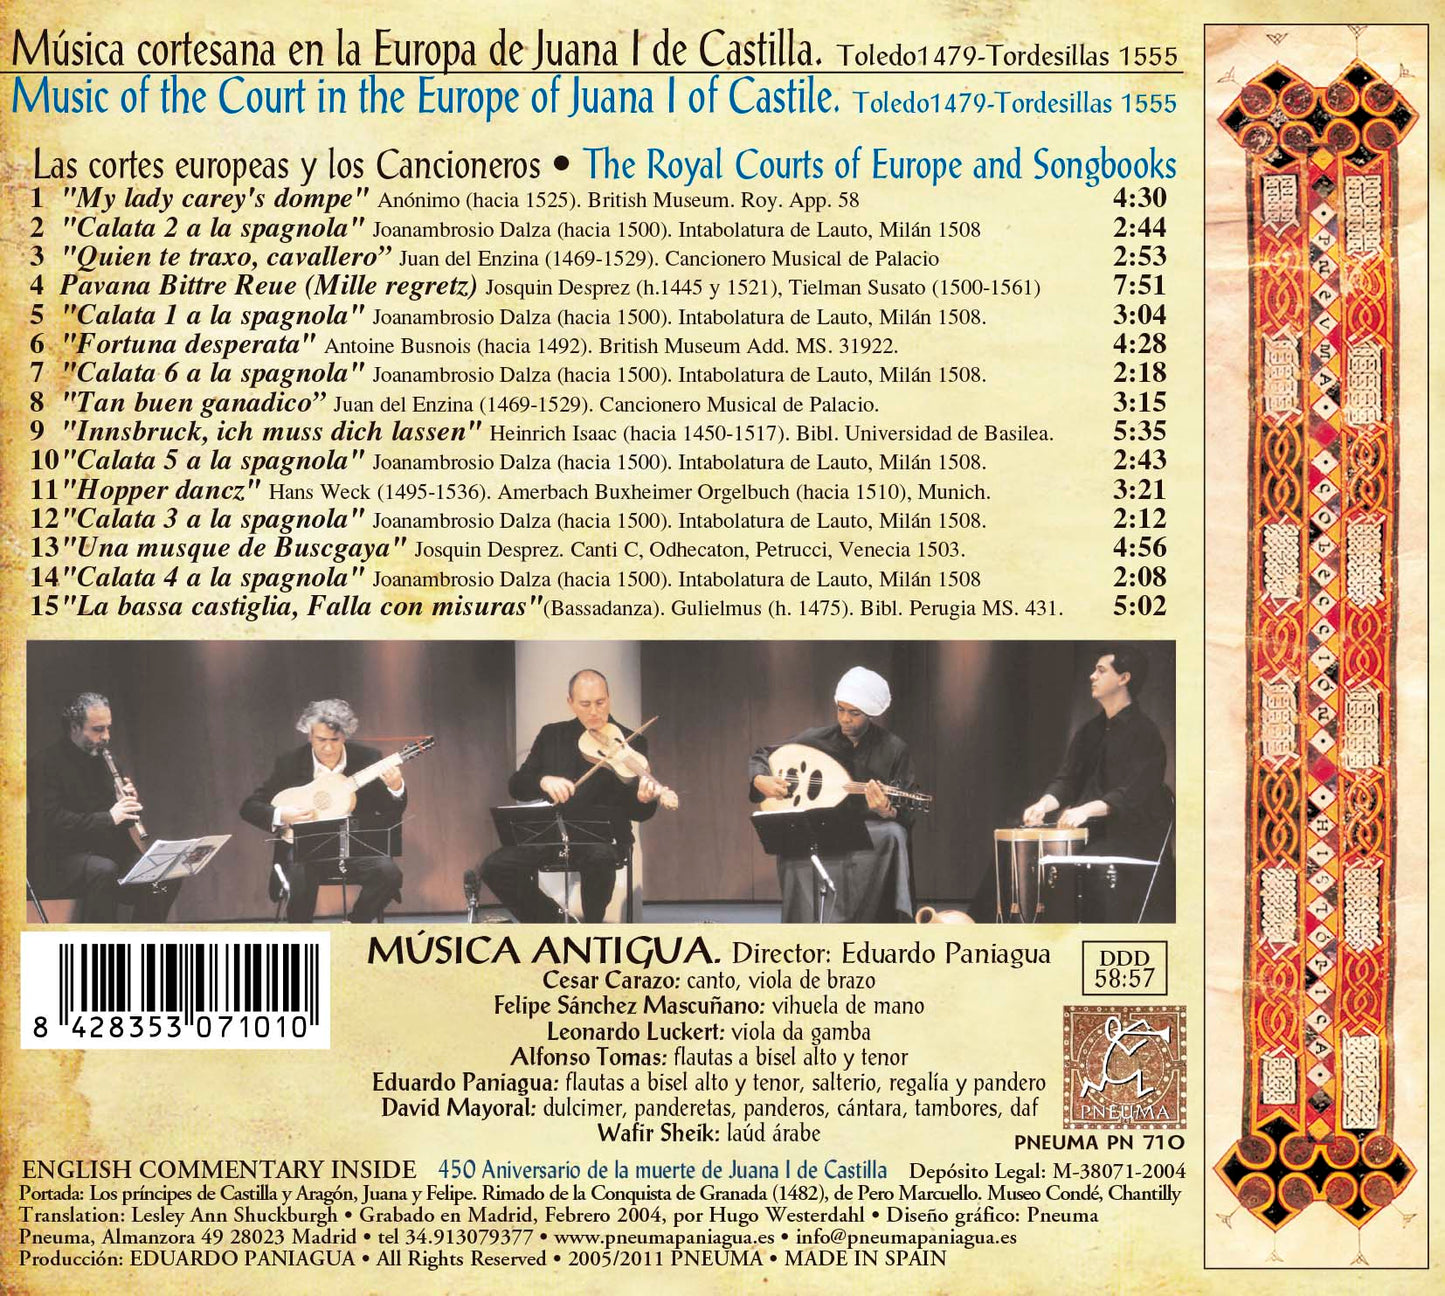 PN 710 JUANA I DE CASTILLA. Toledo1479-Tordesillas 1555 Musica cortesana en la Europa de Juana I de Castilla   Las Cortes europeas y los Cancioneros.